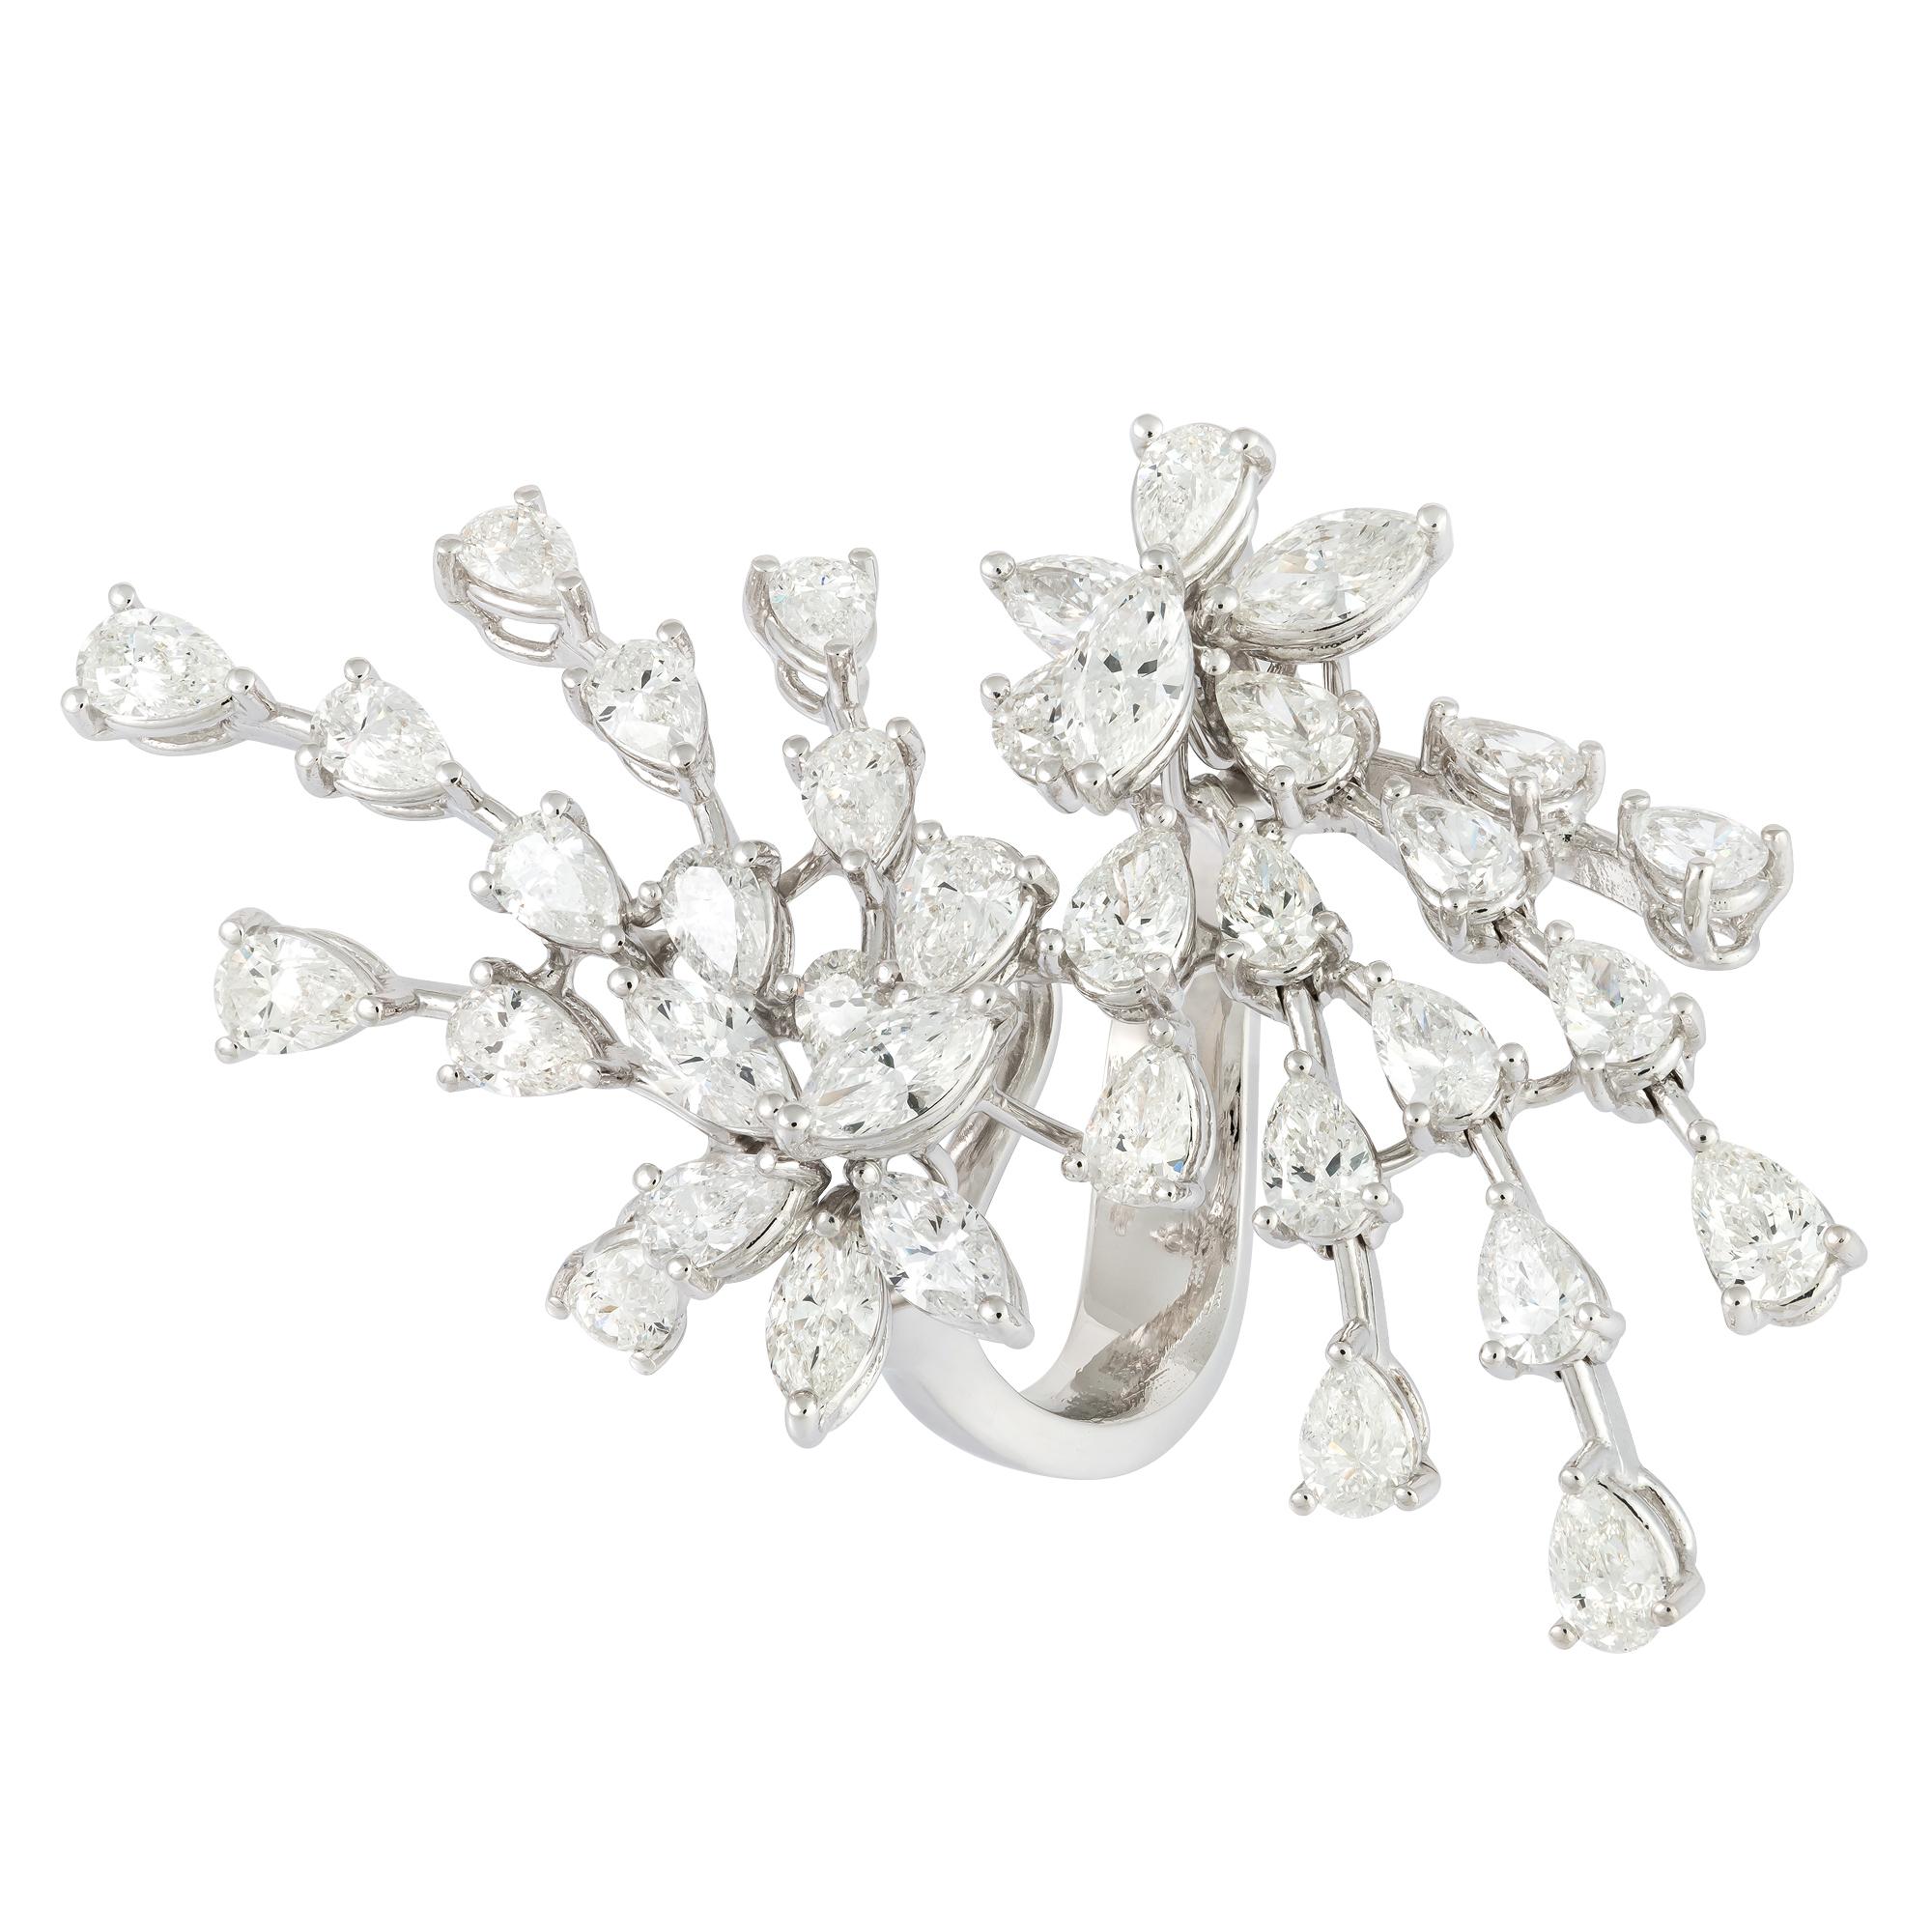 For Sale:  Sparkling White 18K Gold White Diamond Ring for Her 3